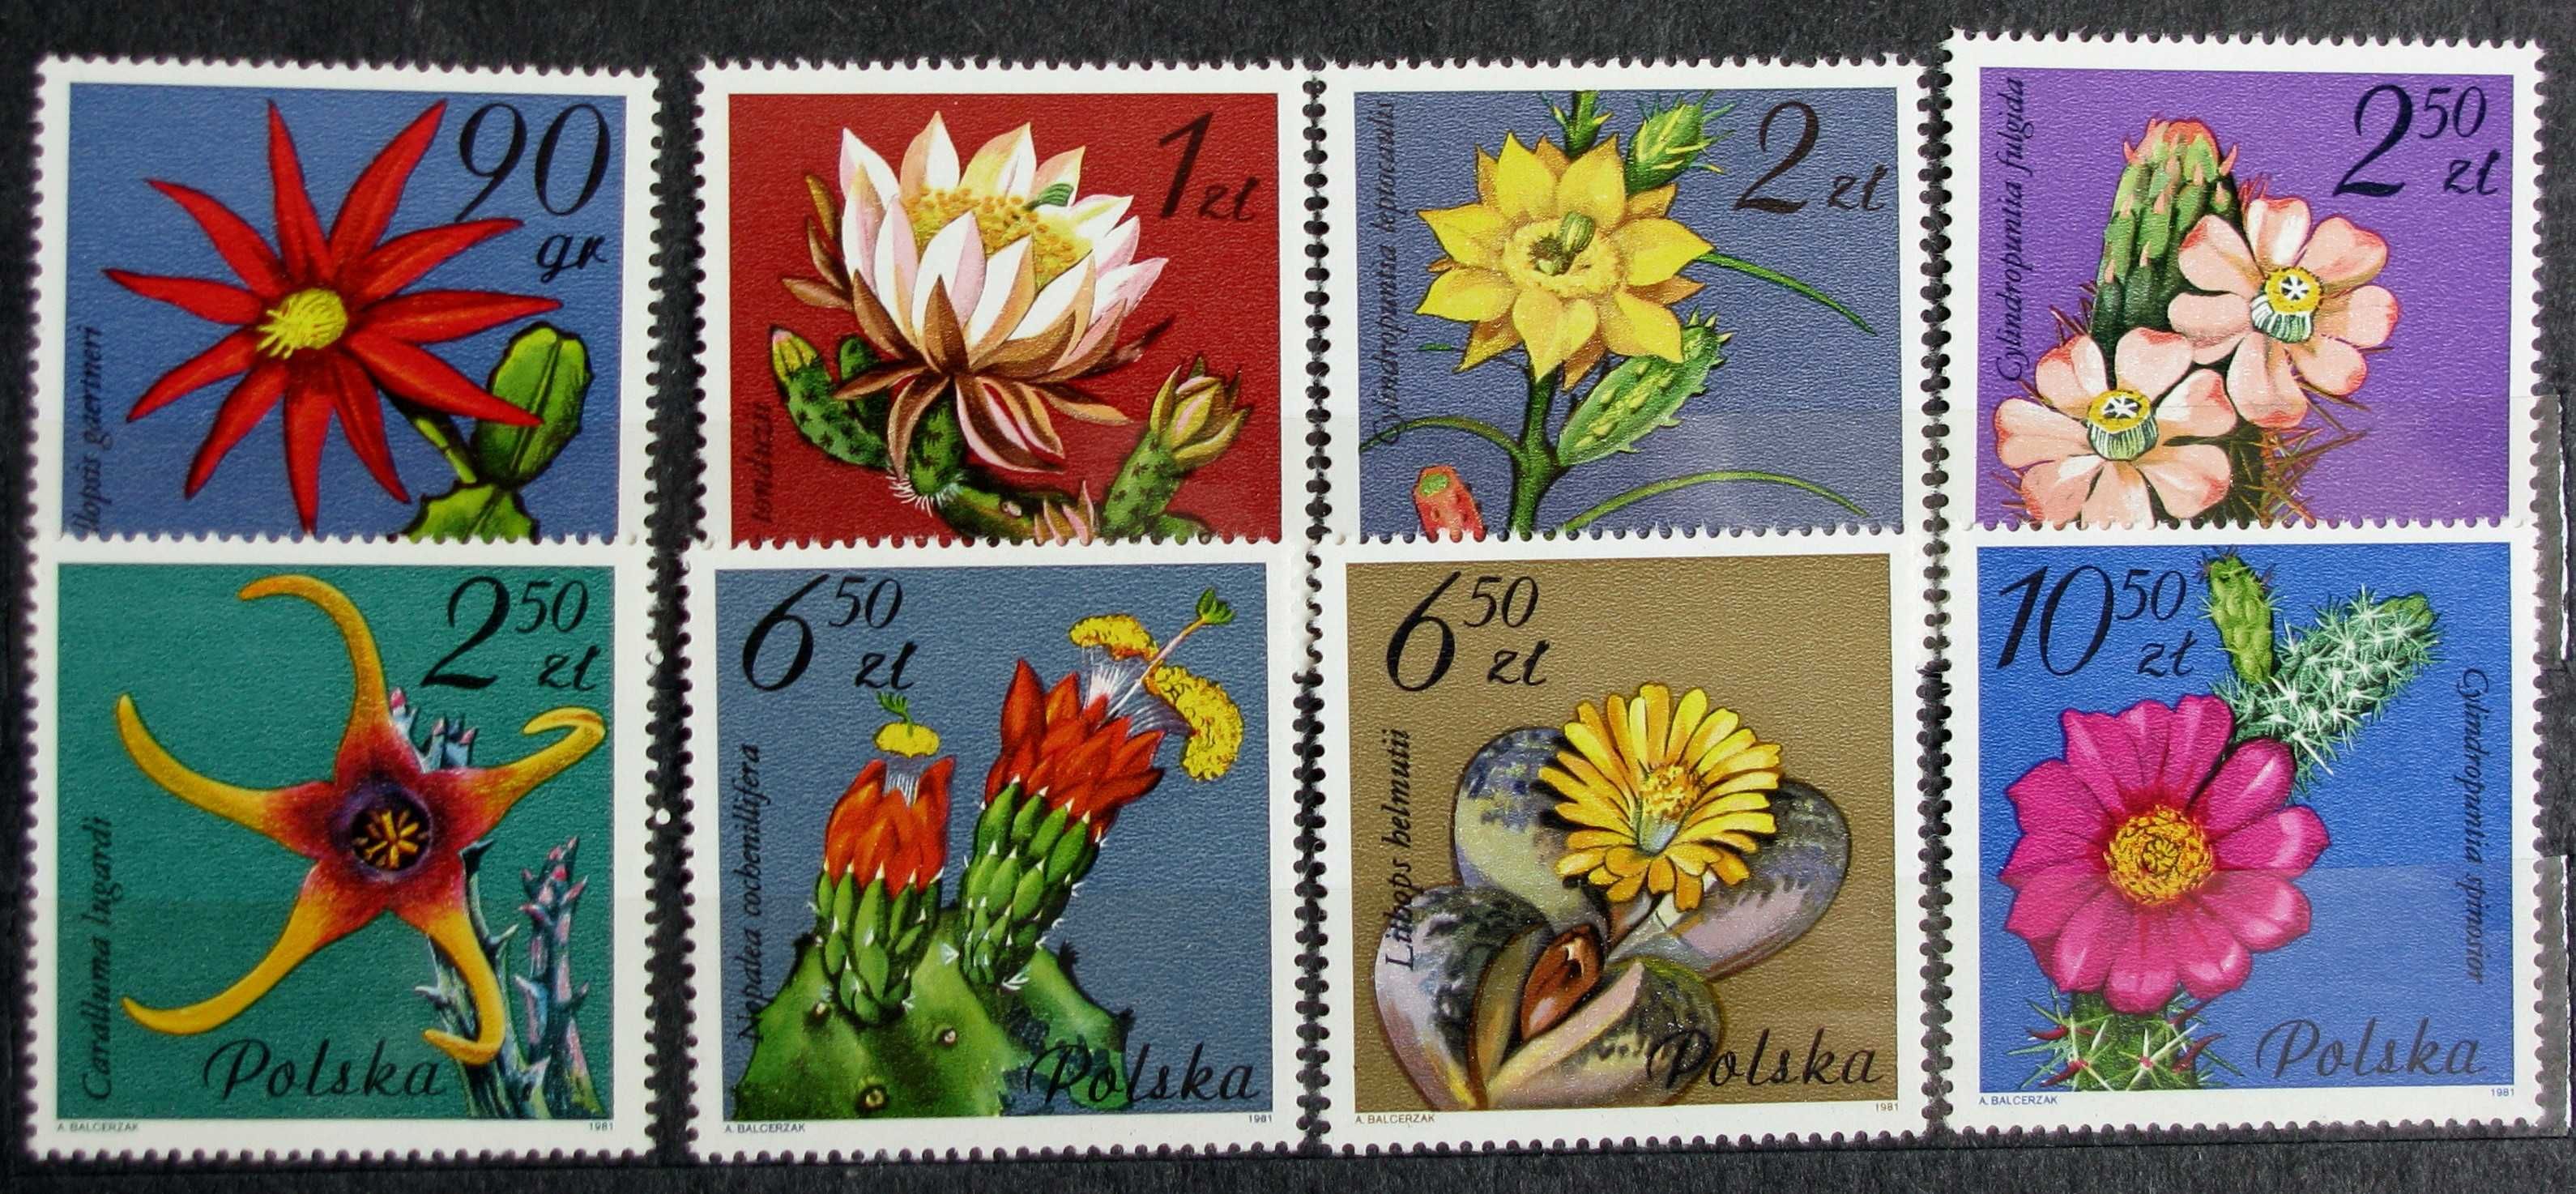 Znaczki pocztowe - rocznik 1981